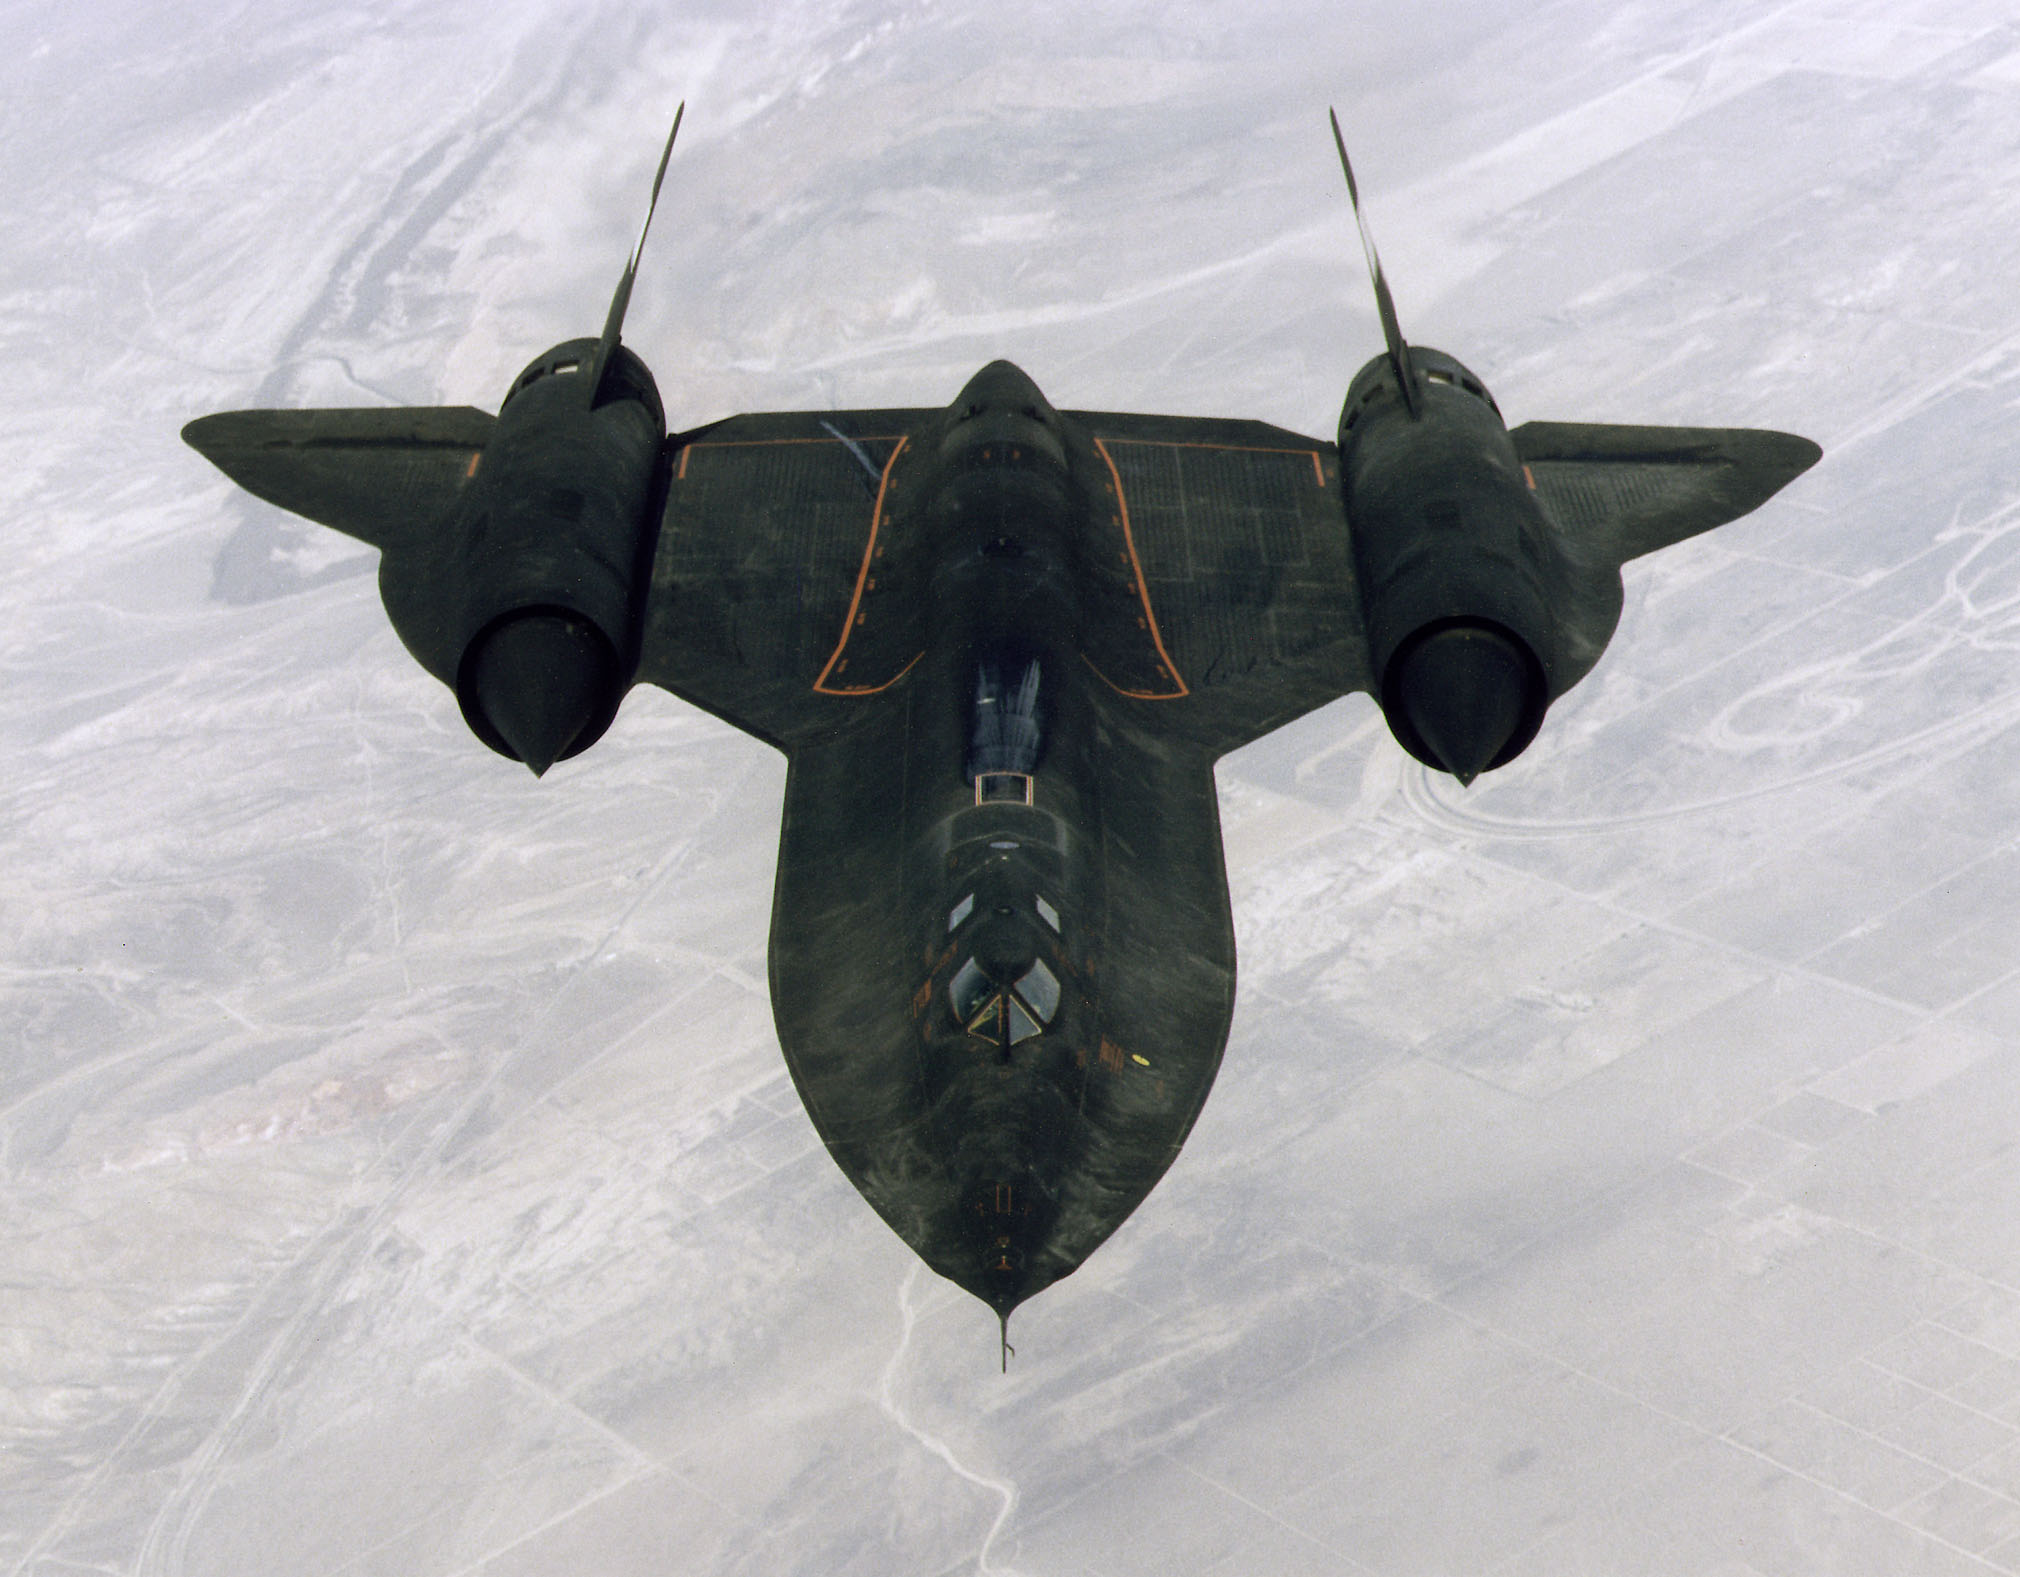 SR-71 Blackbird: The Cold War spy plane that's still the world's fastest  airplane - CNN Style